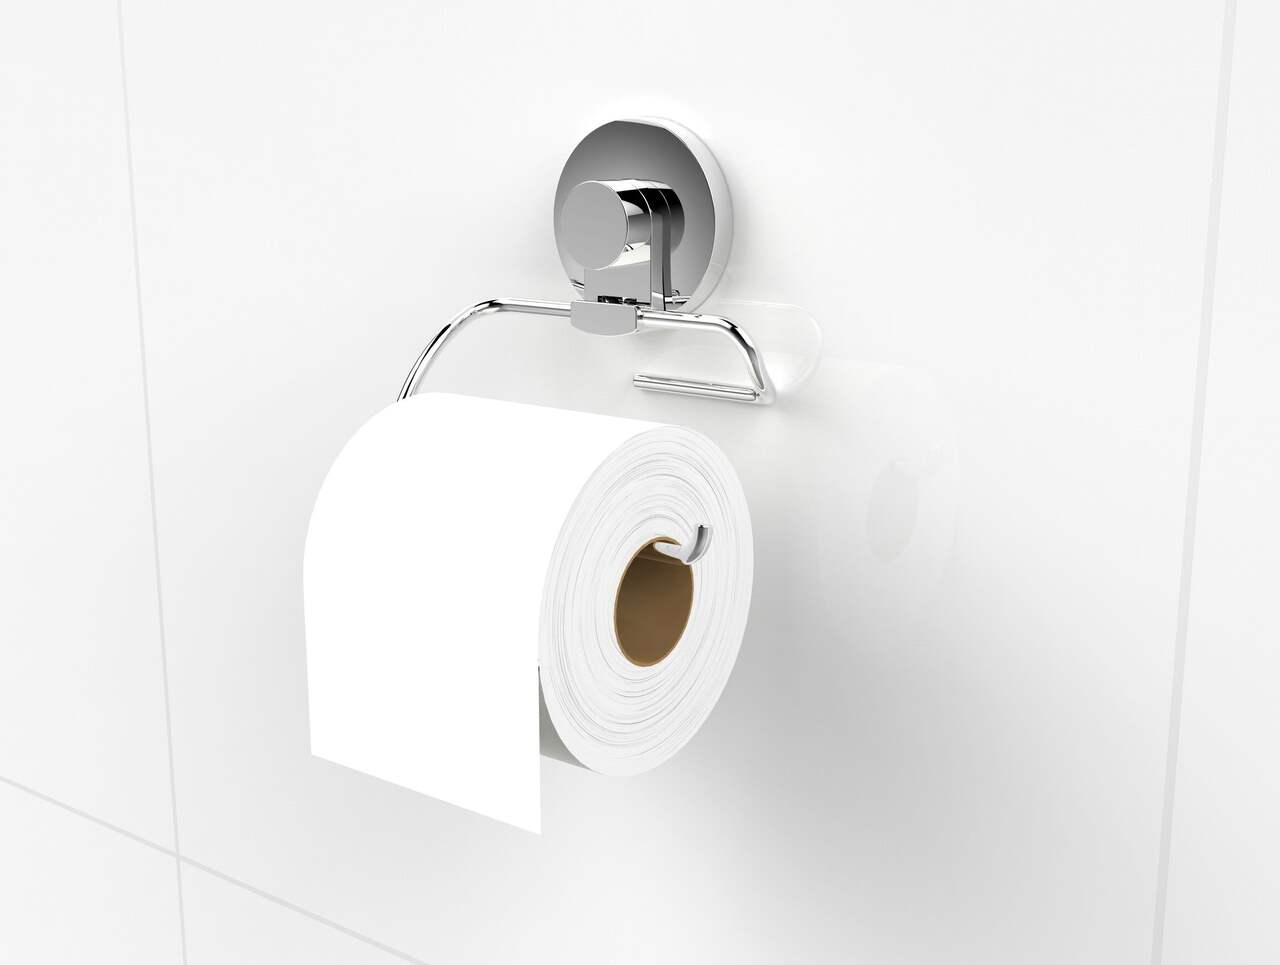 Ventouse support rouleau papier Toilette VS Home